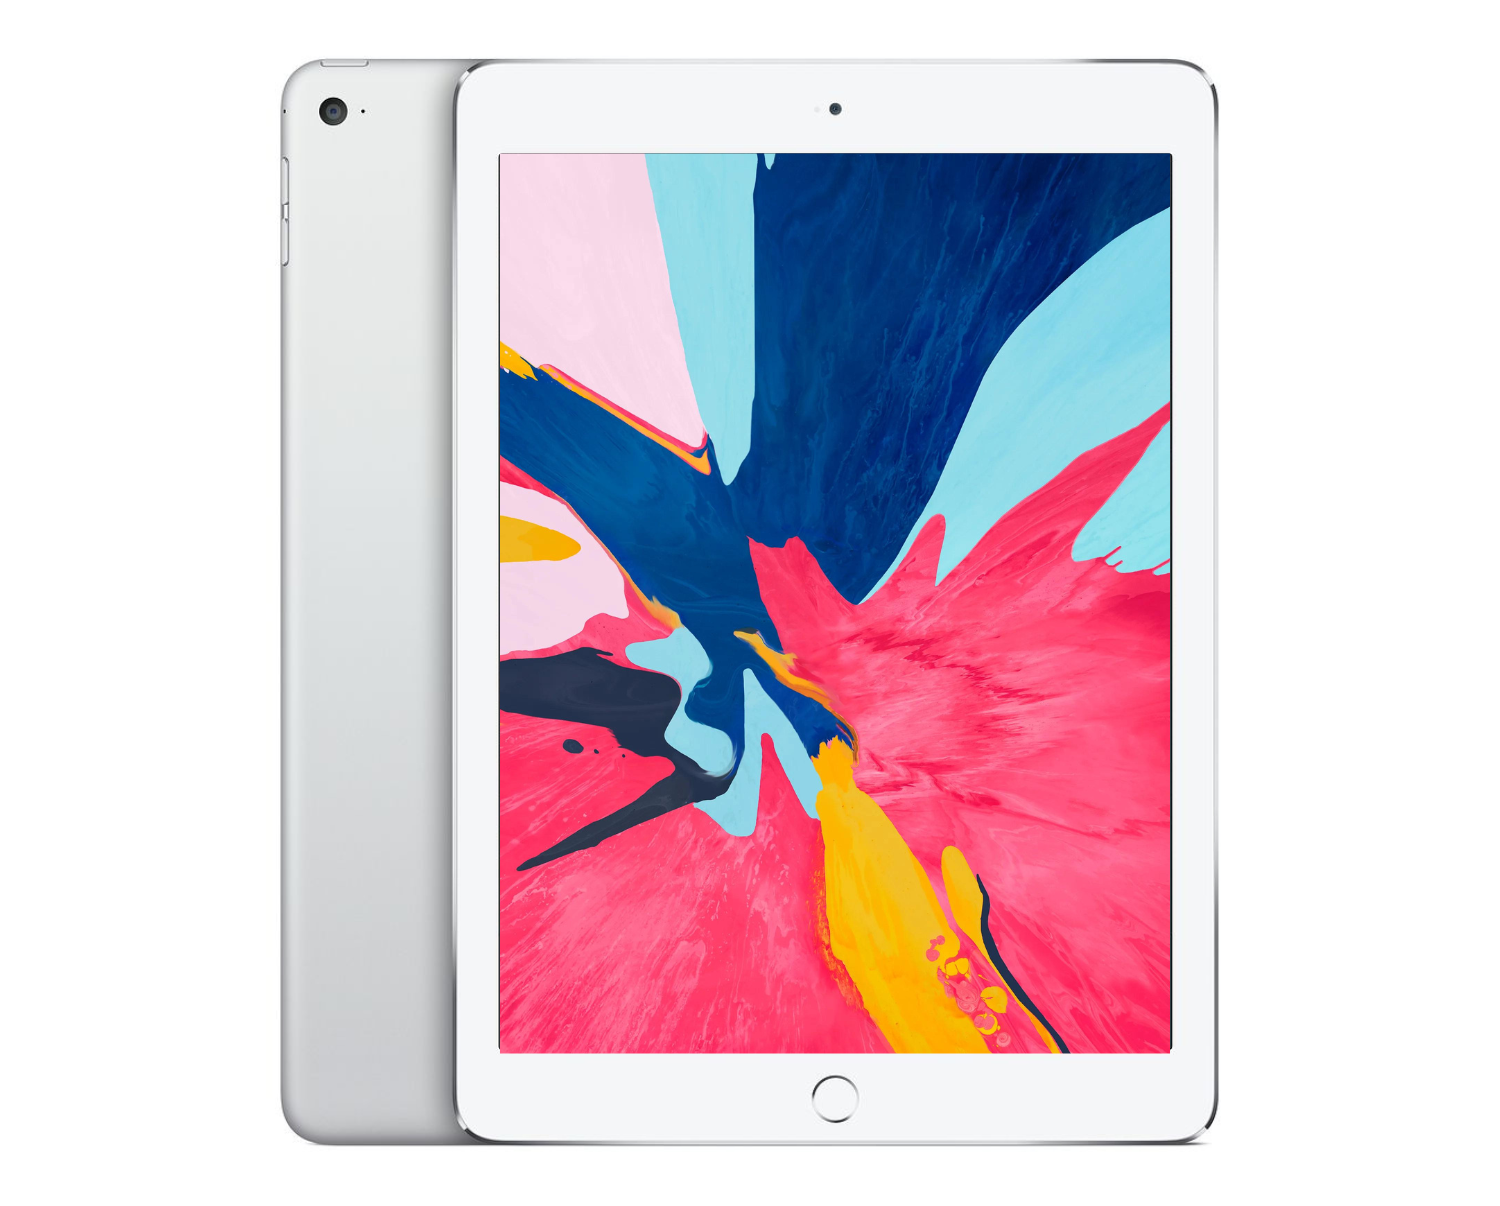 Refurbished Apple iPad Air 2 128GB WiFi/Cellular A1567 Silver